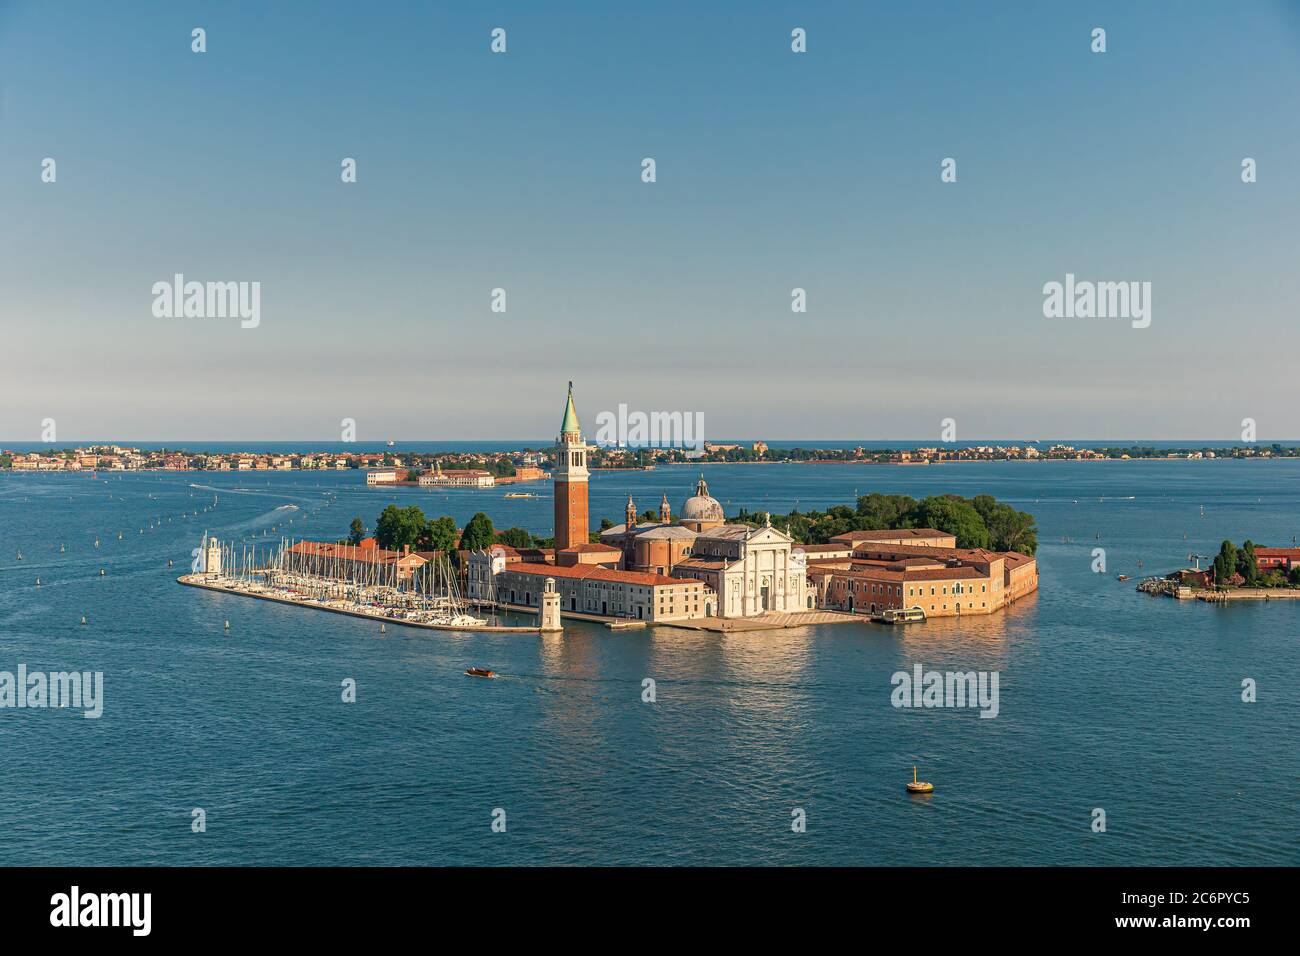 San Giorgio Maggiore islet in Venice Stock Photo